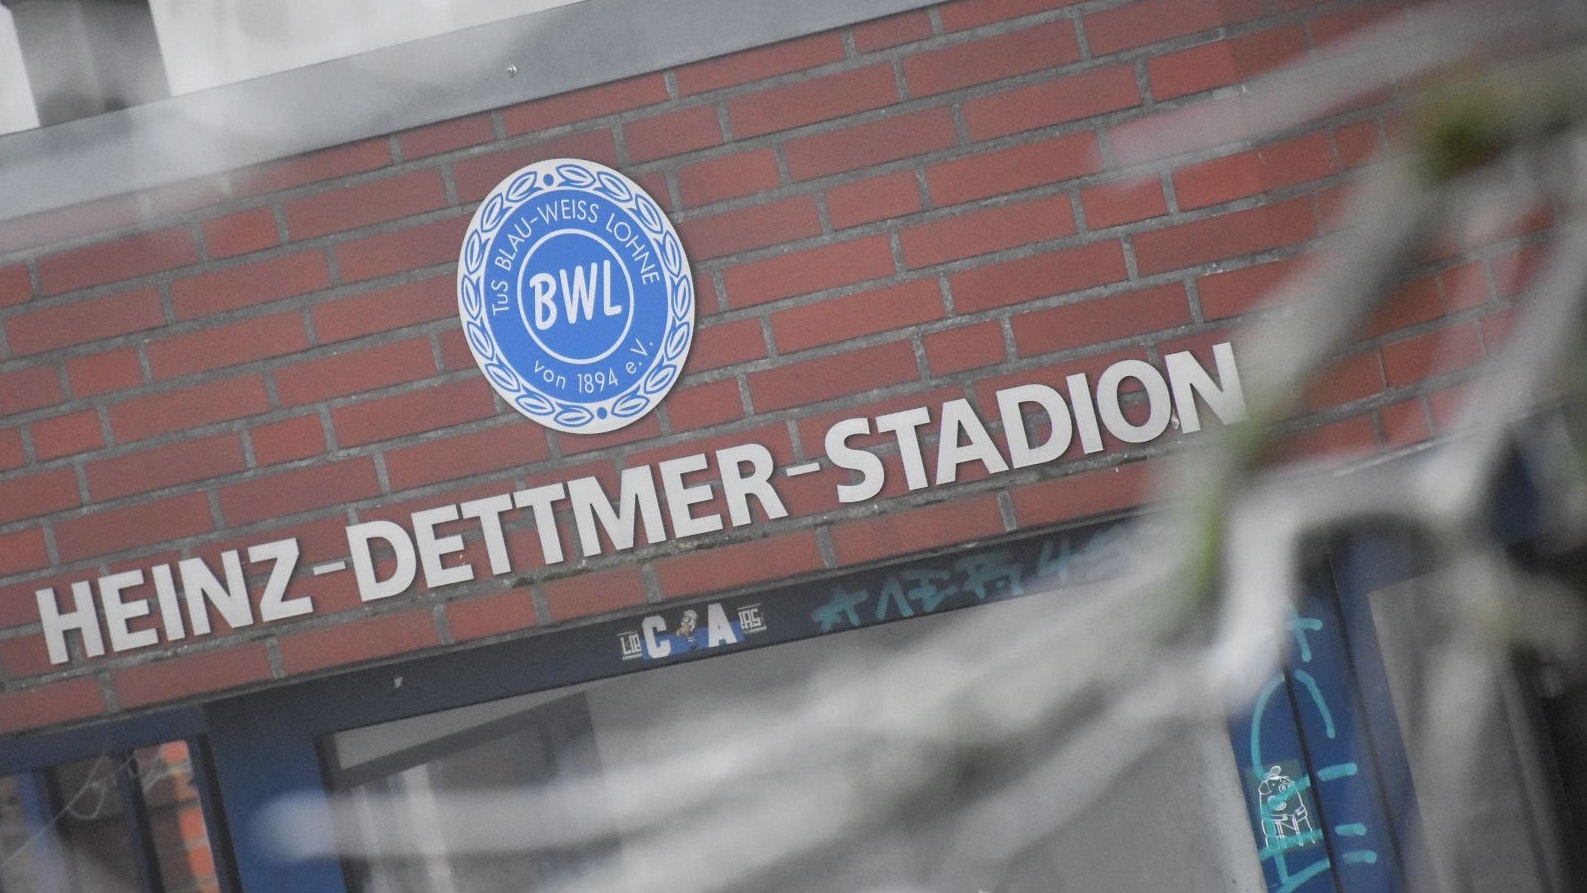 Raureifkälte im Dezember: Die Diskussion über den städtischen Zuschuss für den Umbau des Heinz-Dettmer-Stadions von Blau-Weiß Lohne lief dagegen zwischenzeitlich heiß.&nbsp; &nbsp; Foto: Timphaus